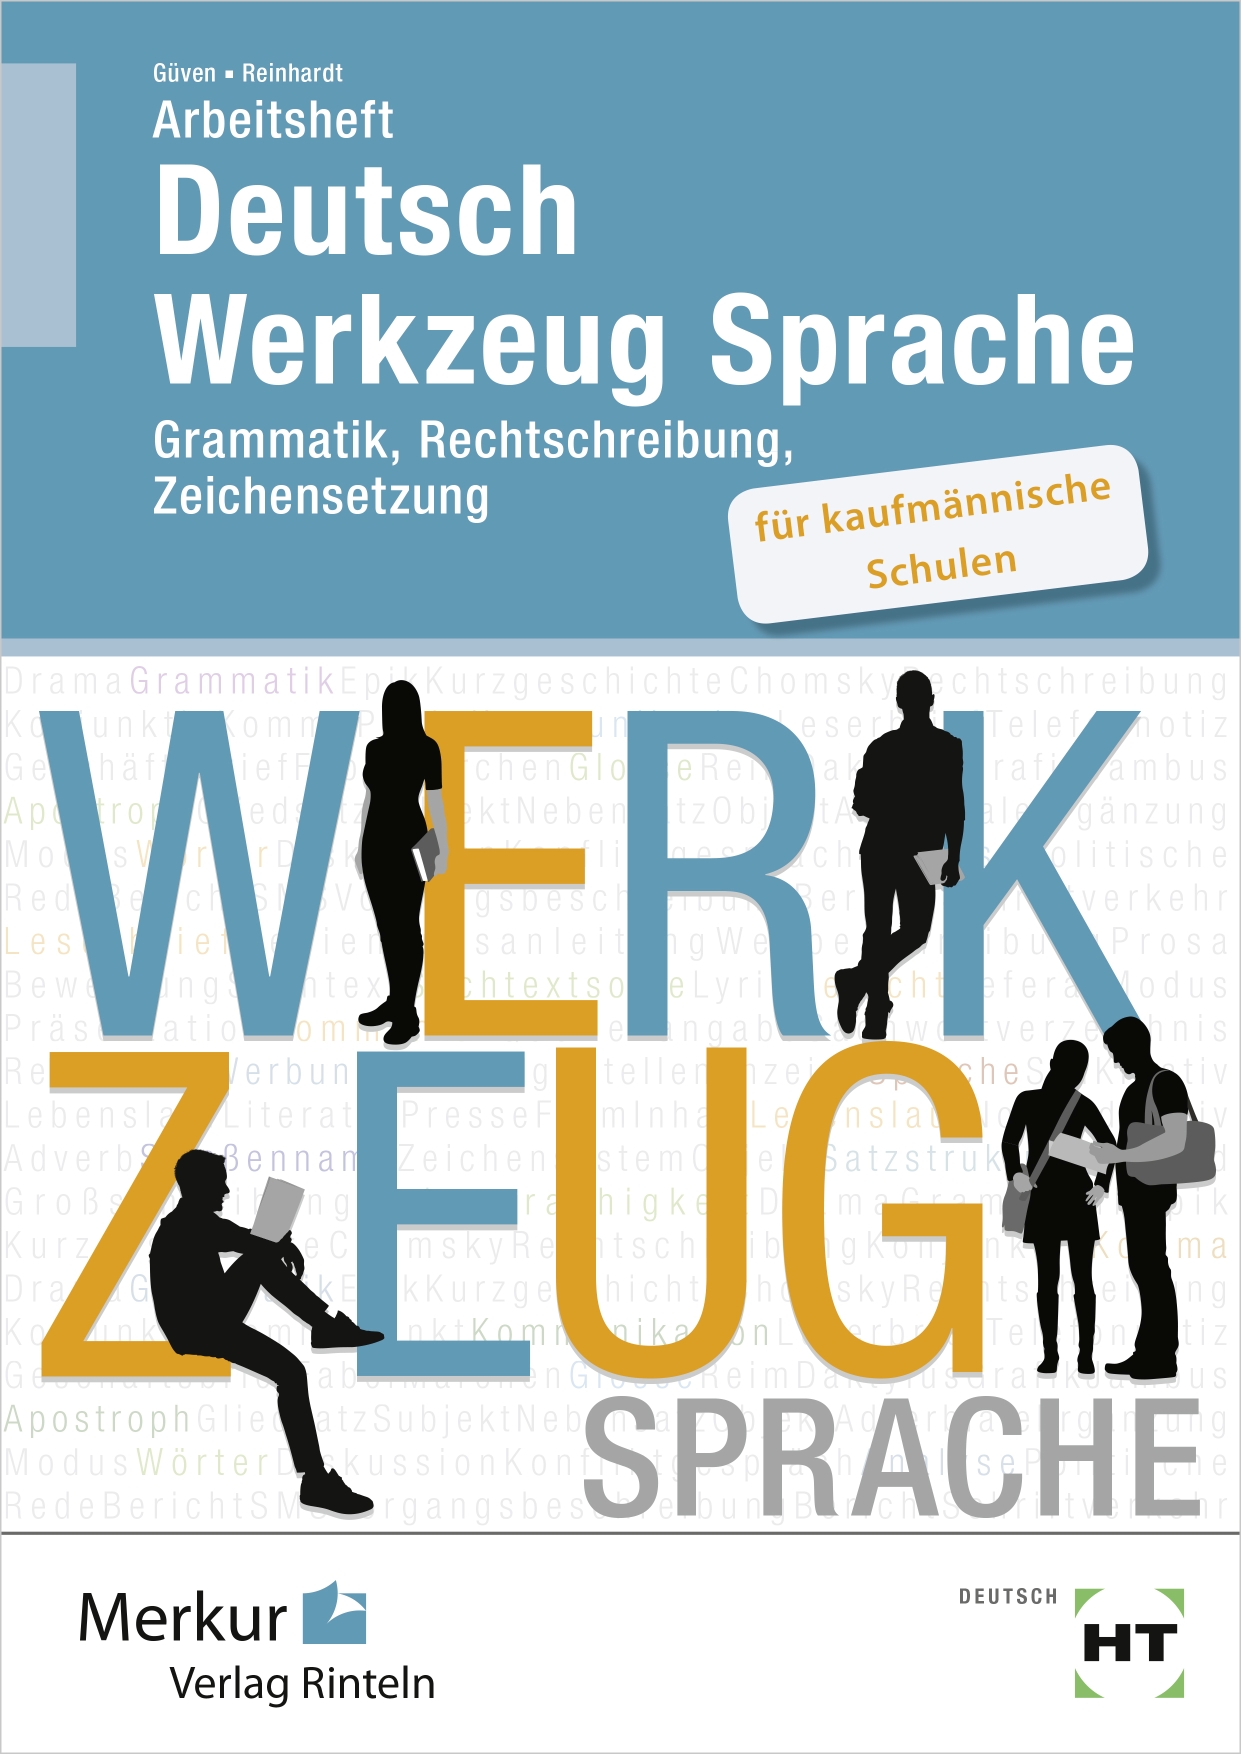 Arbeitsheft Deutsch - Werkzeug Sprache für kaufmännische Schulen Grammatik, Rechtschreibung, Zeichensetzung